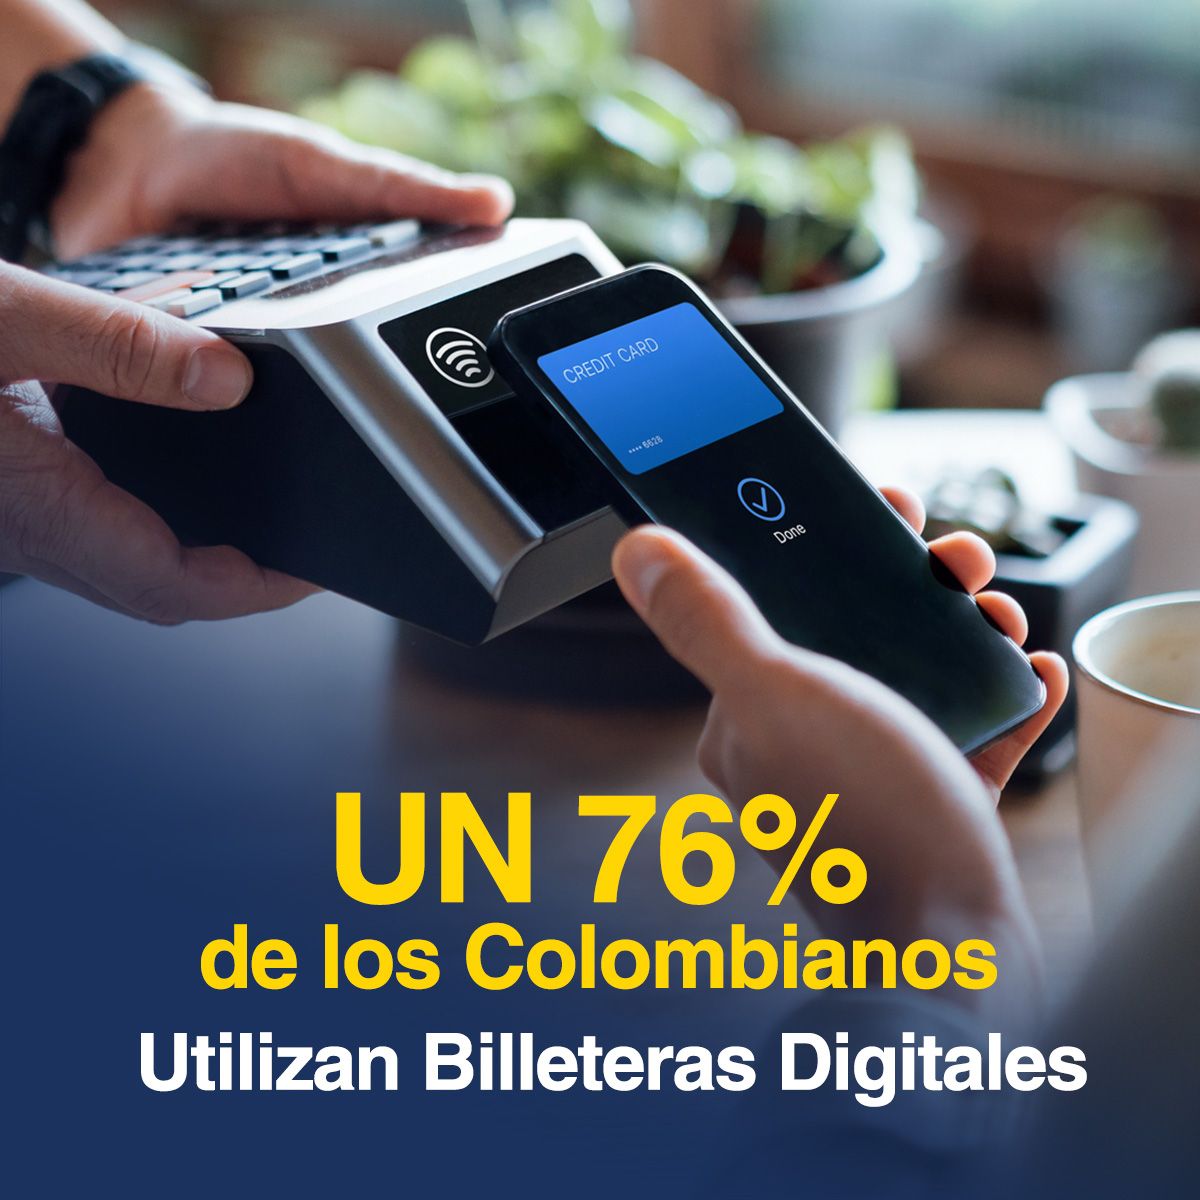 Un 76% de los Colombianos Utilizan Billeteras Digitales